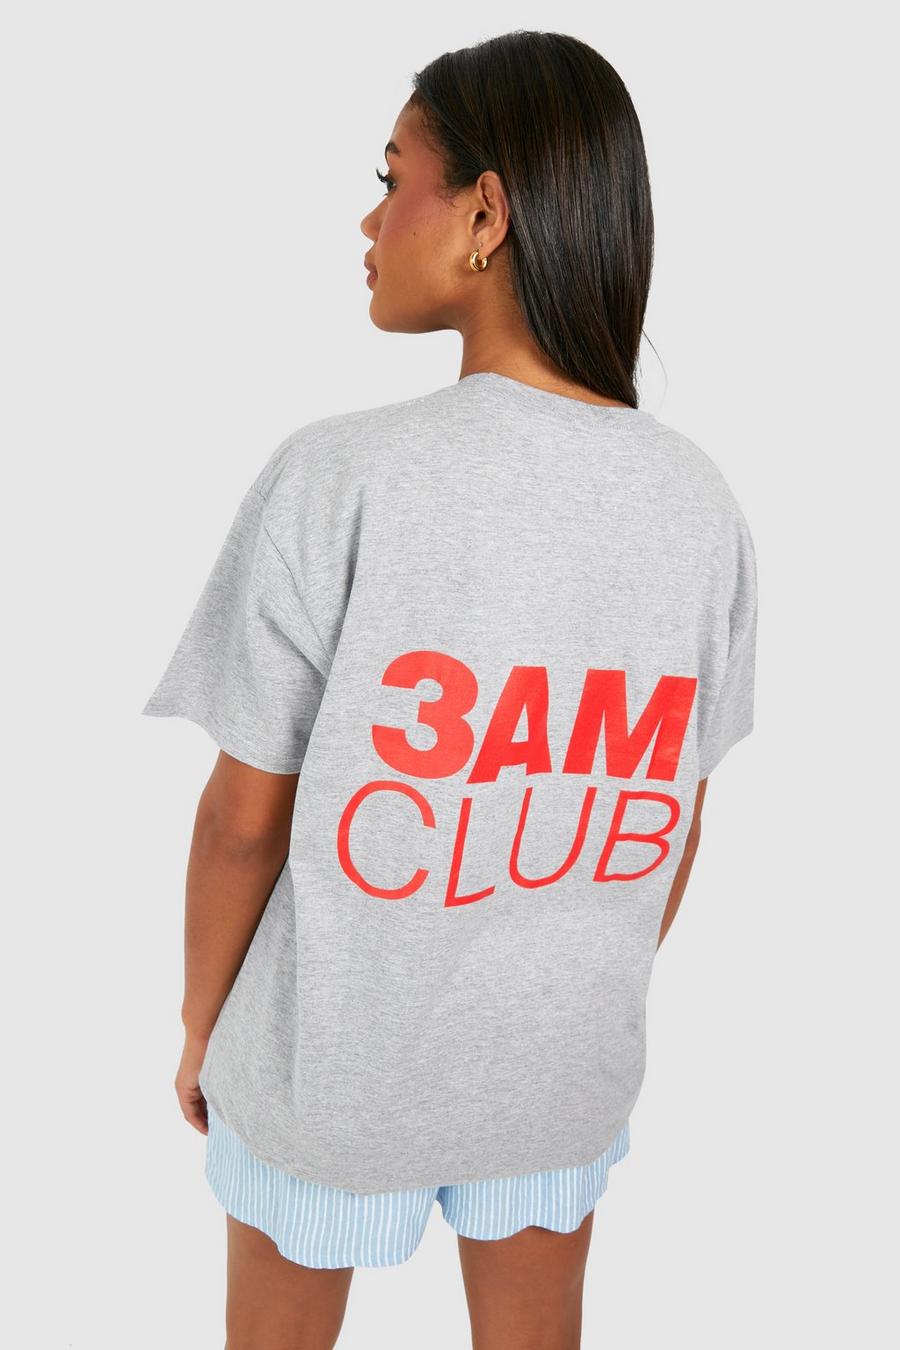 T-shirt oversize en coton à slogan 3am Club, Grey image number 1